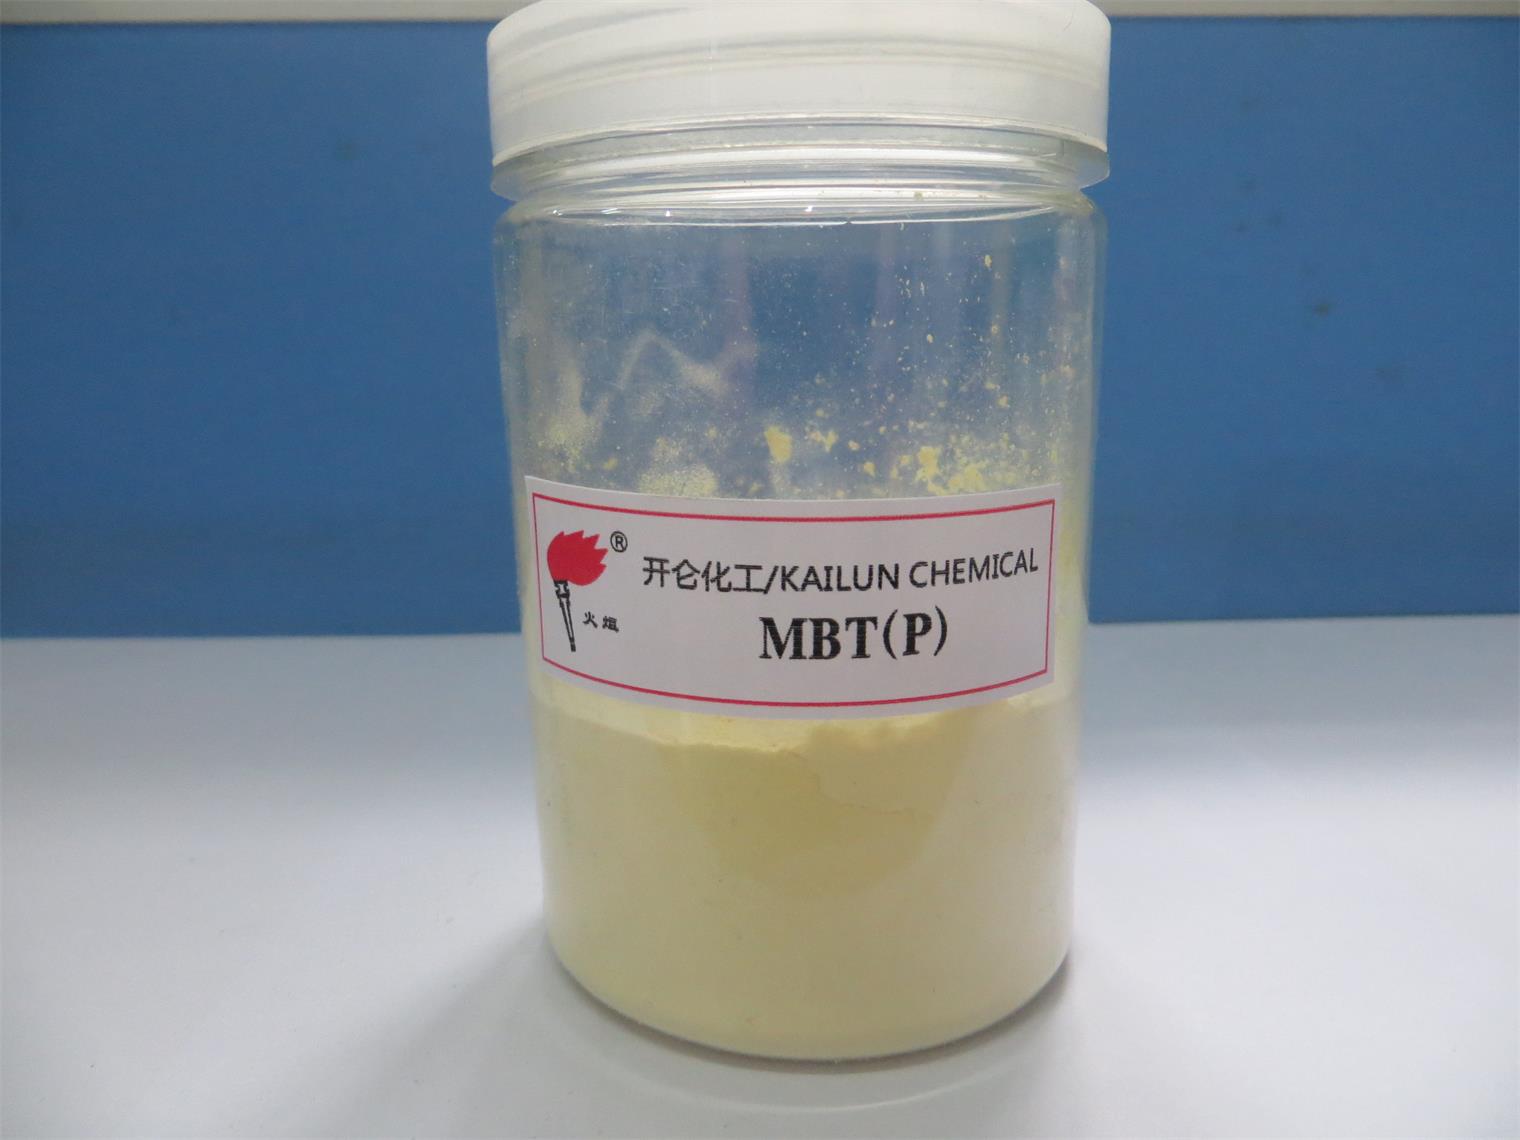 橡胶助剂橡胶化促进剂MBTS/DM